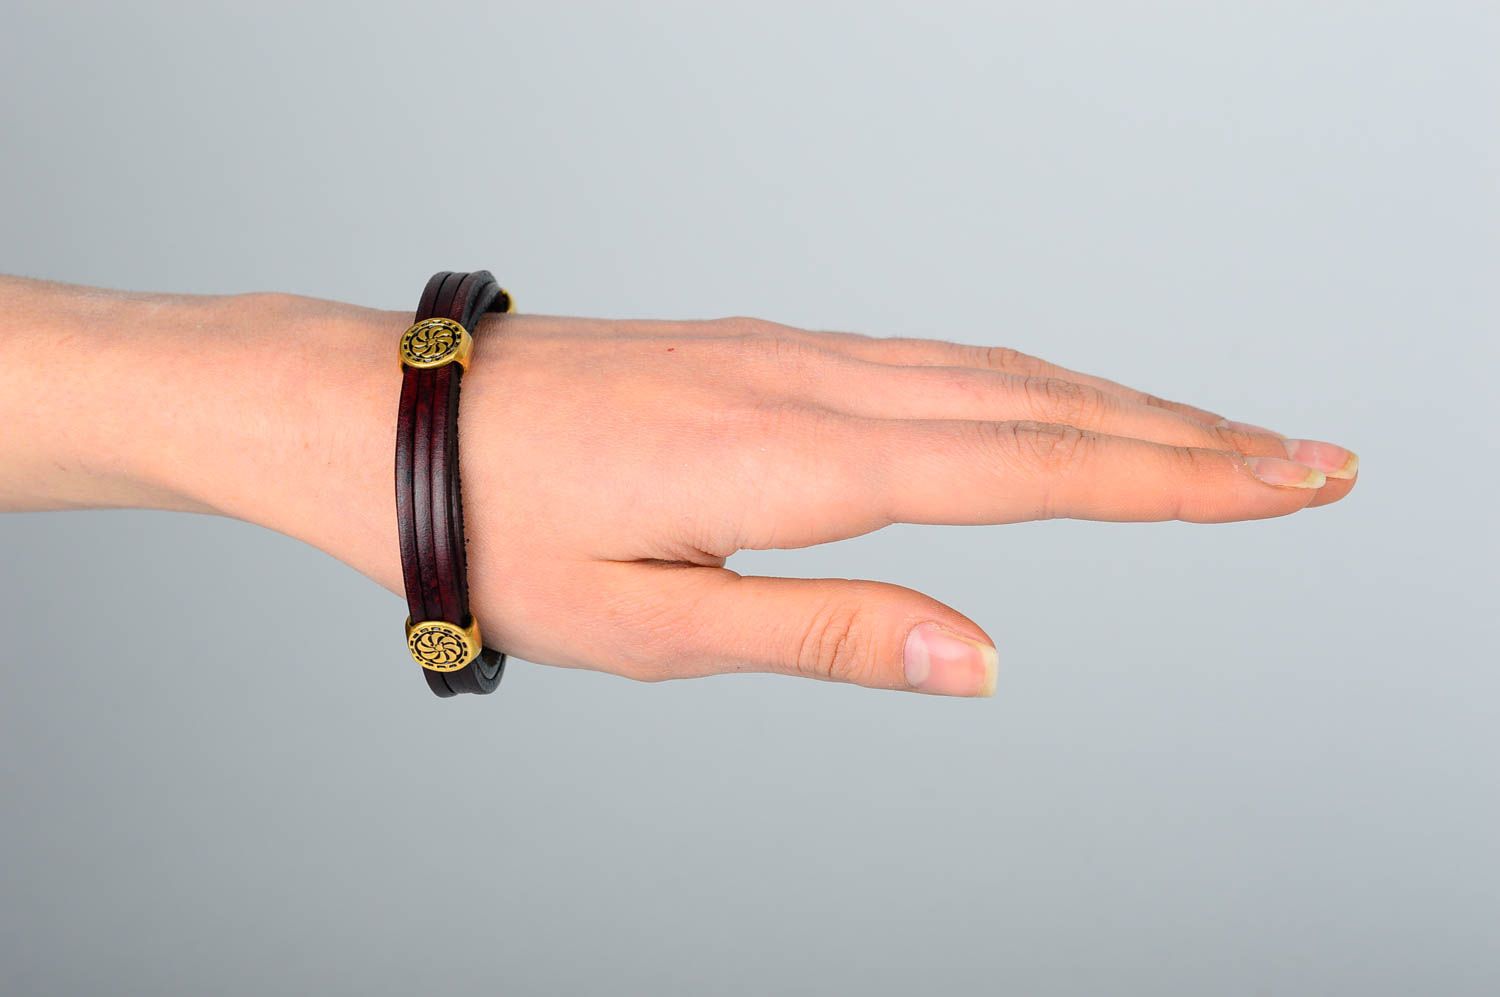 Кожаный браслет хэнд мэйд браслет на руку бордовый модный украшение из кожи фото 2